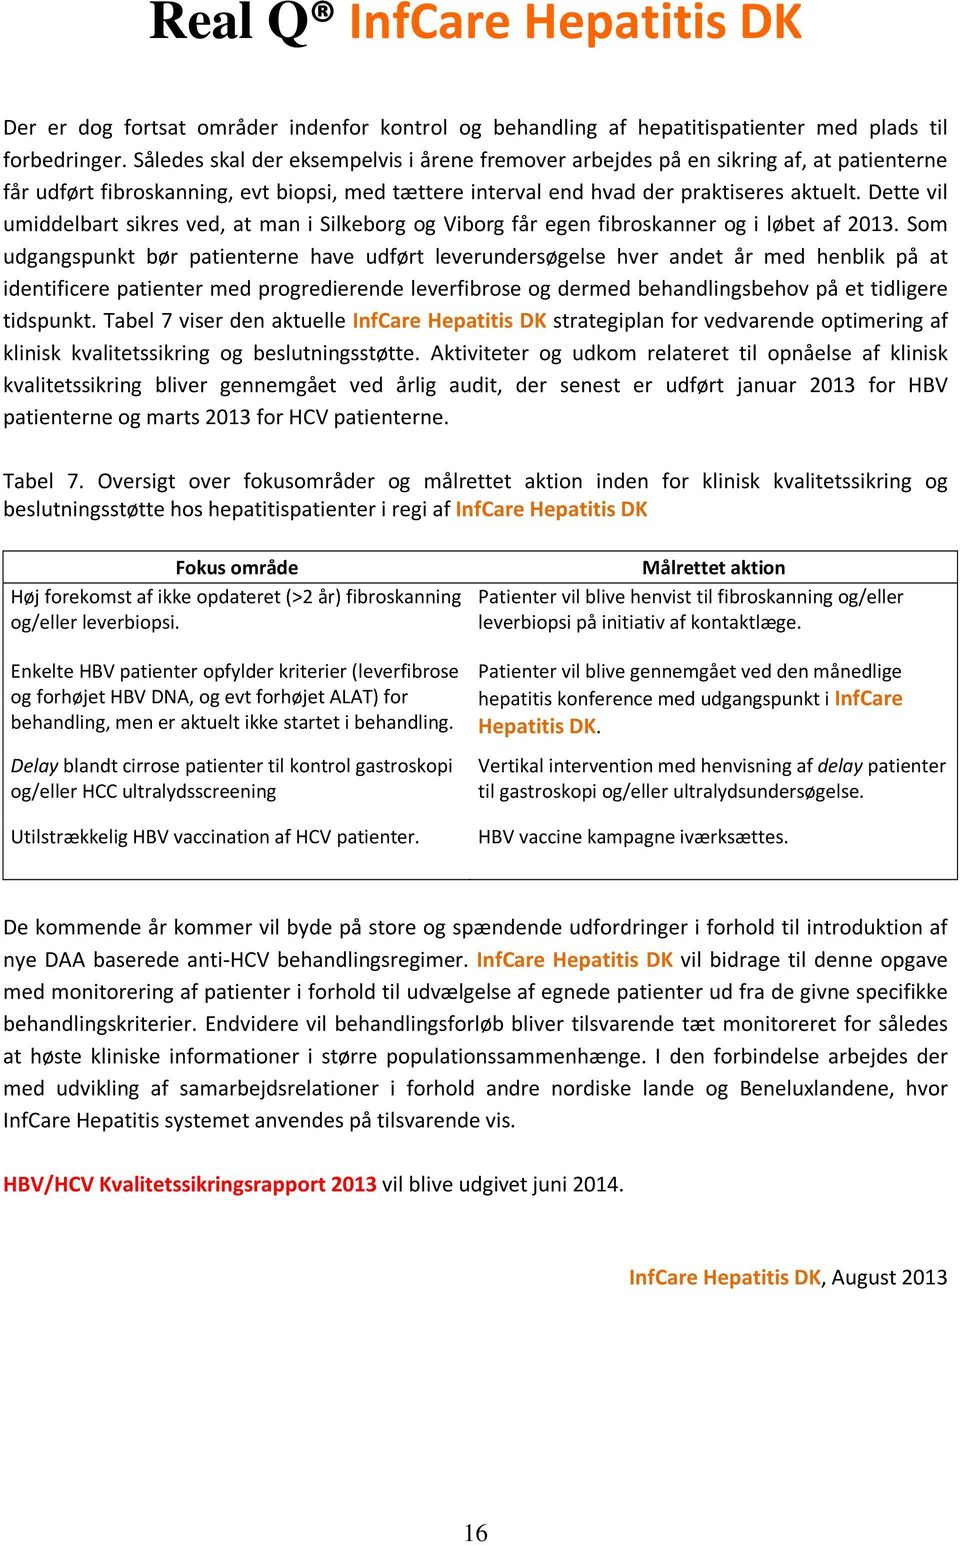 Dette vil umiddelbart sikres ved, at man i Silkeborg og Viborg får egen fibroskanner og i løbet af 2013.